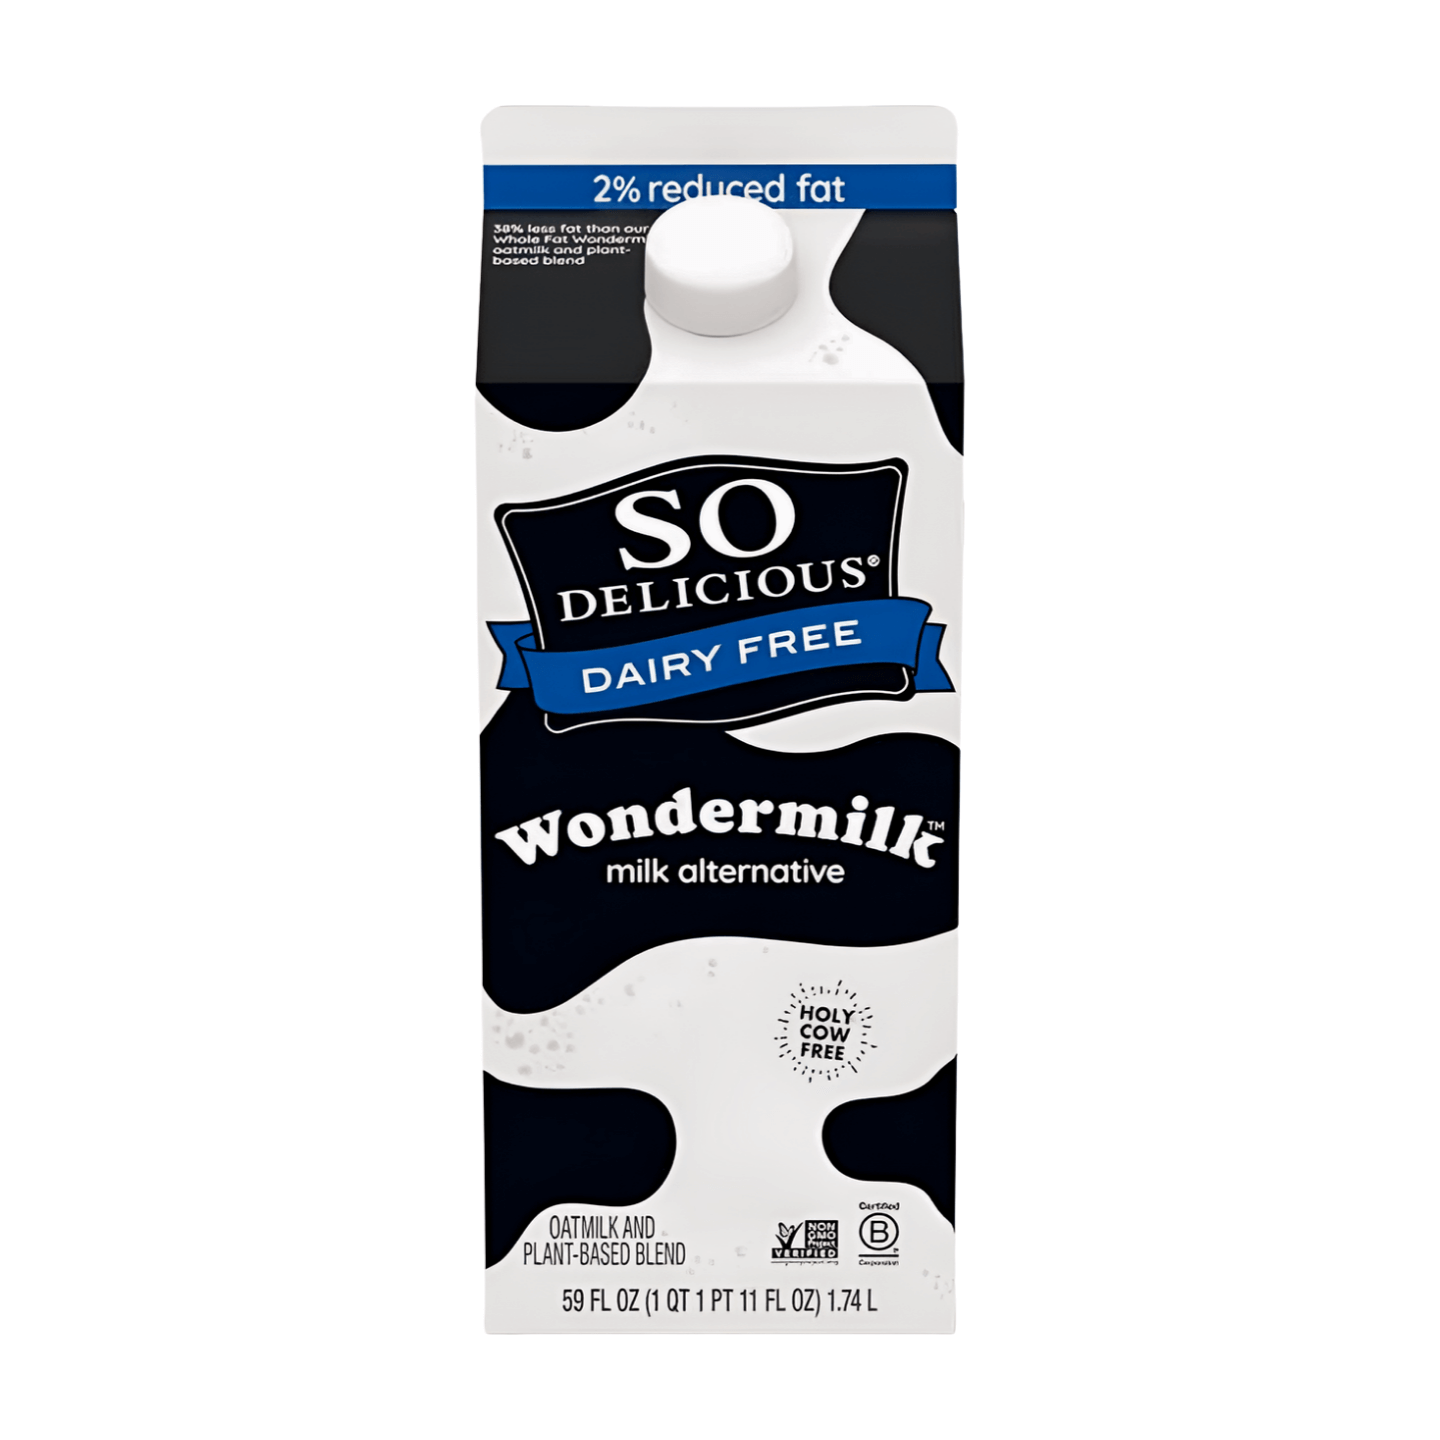 So Delicious Reduced Fat Wondermilk